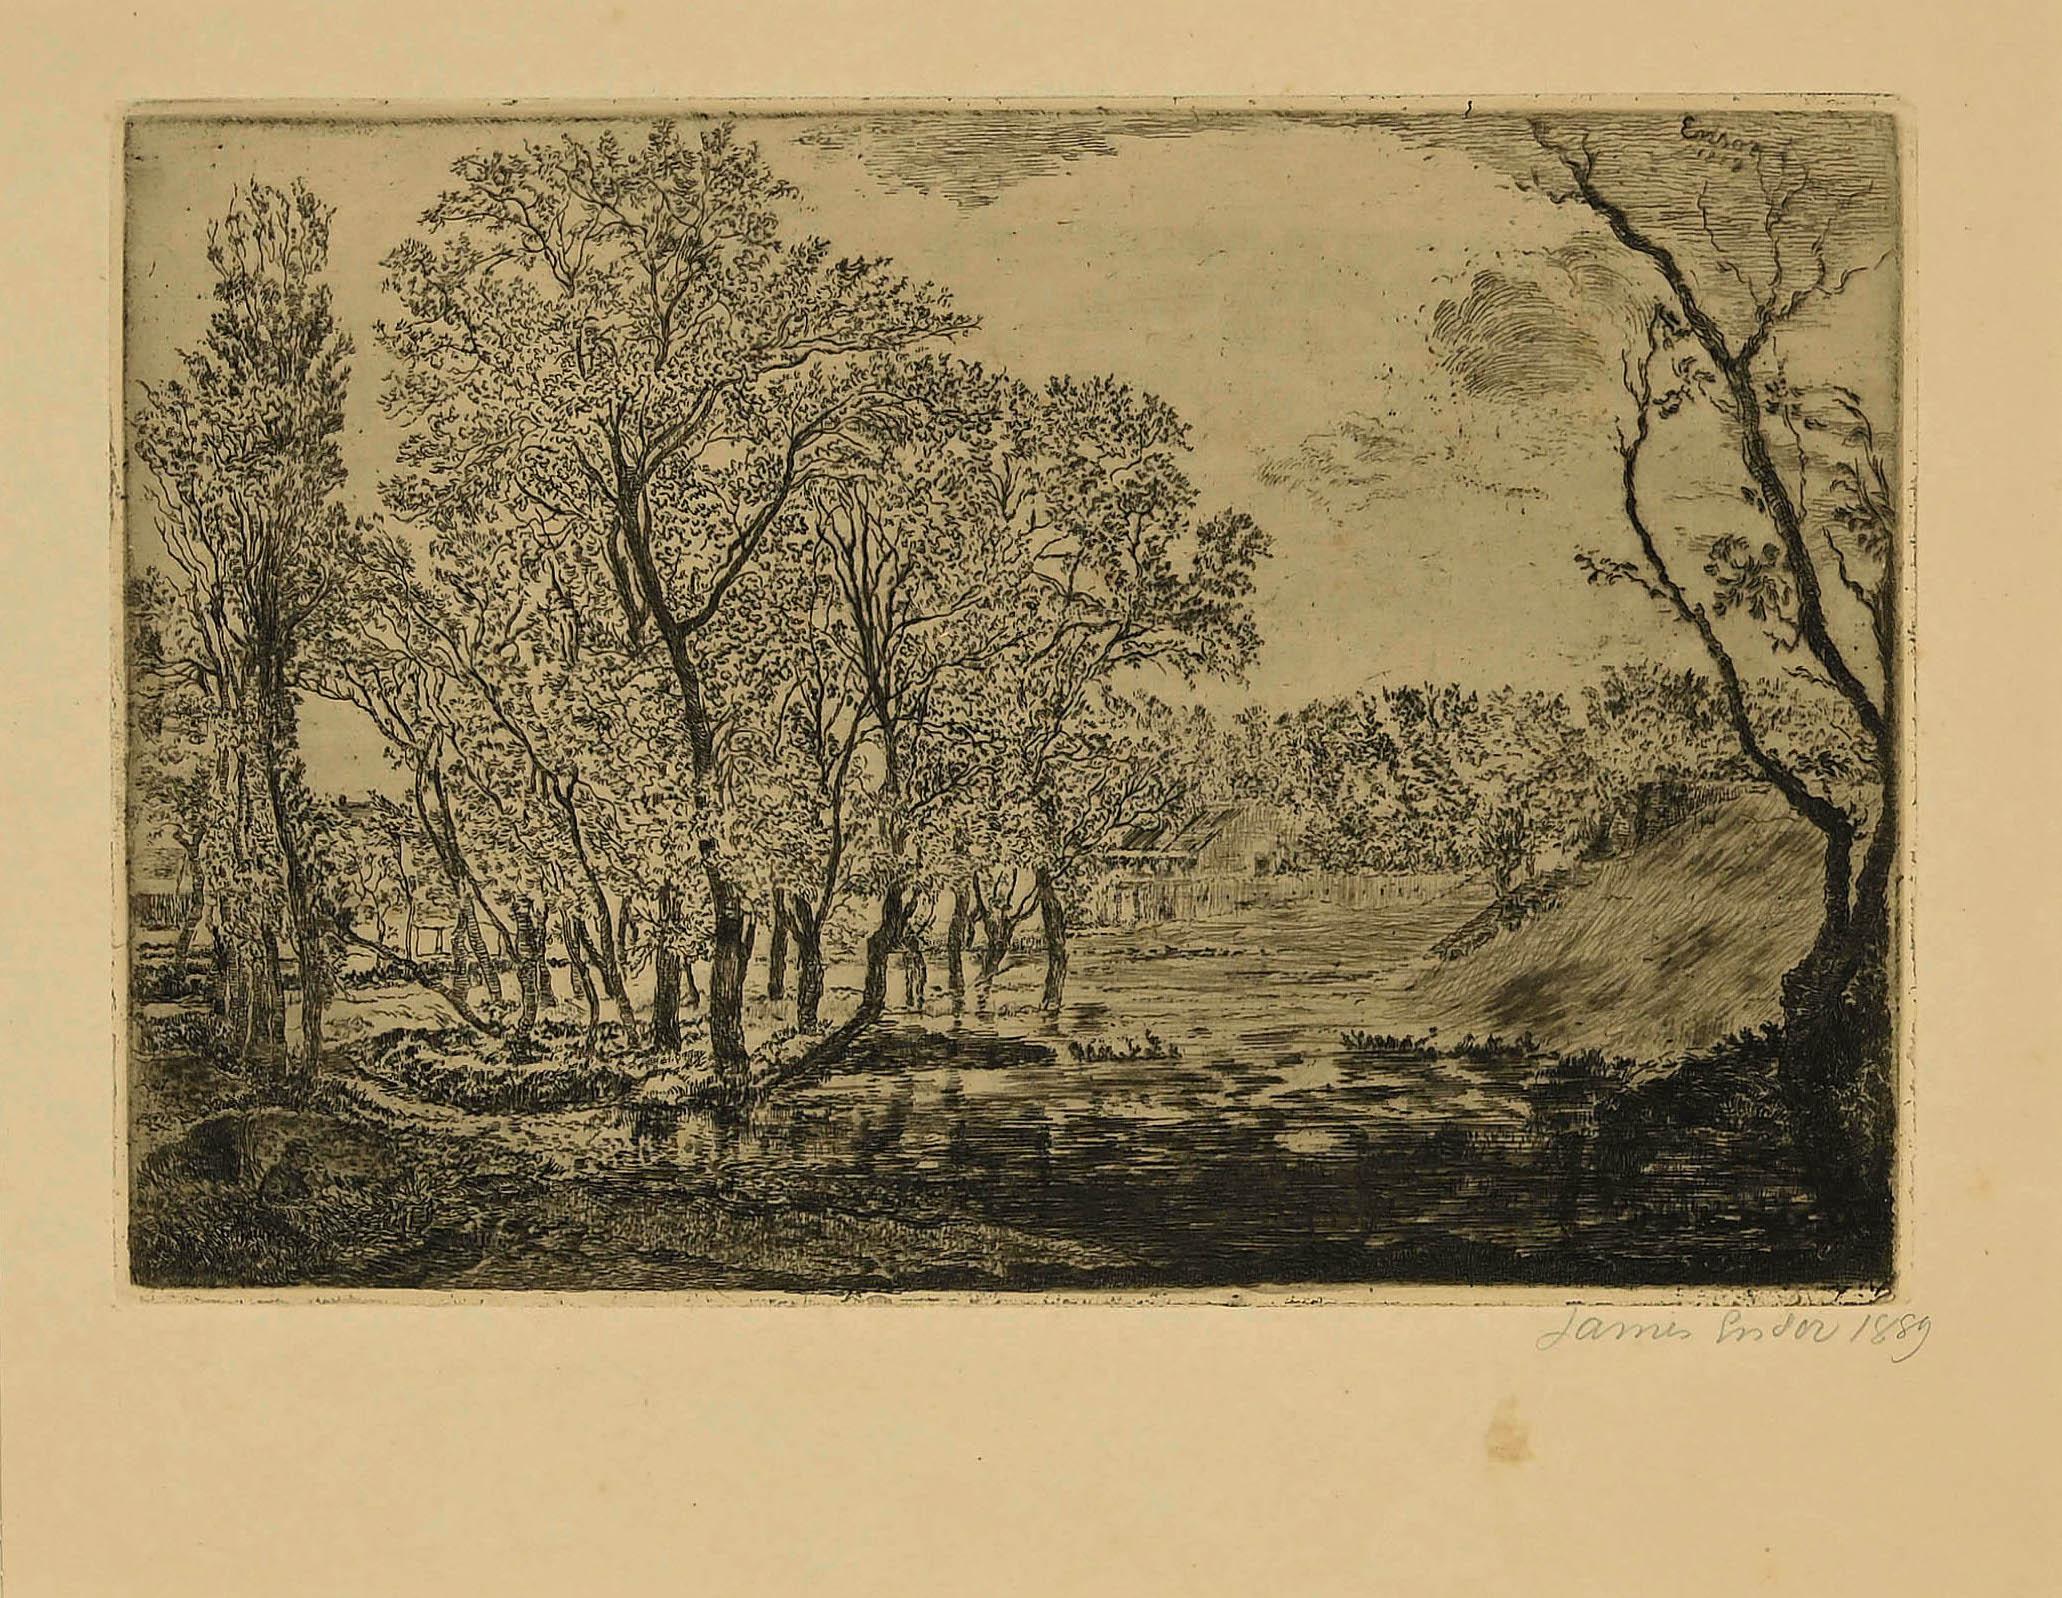 Originalradierung von James Ensor aus dem Jahr 1889.

Handsigniert und datiert. Guter Zustand, kleiner Fleck unten rechts.

Abmessungen des Bildes: 15 x 23 cm

Referenzen: Delteil, Taevernier 74.

